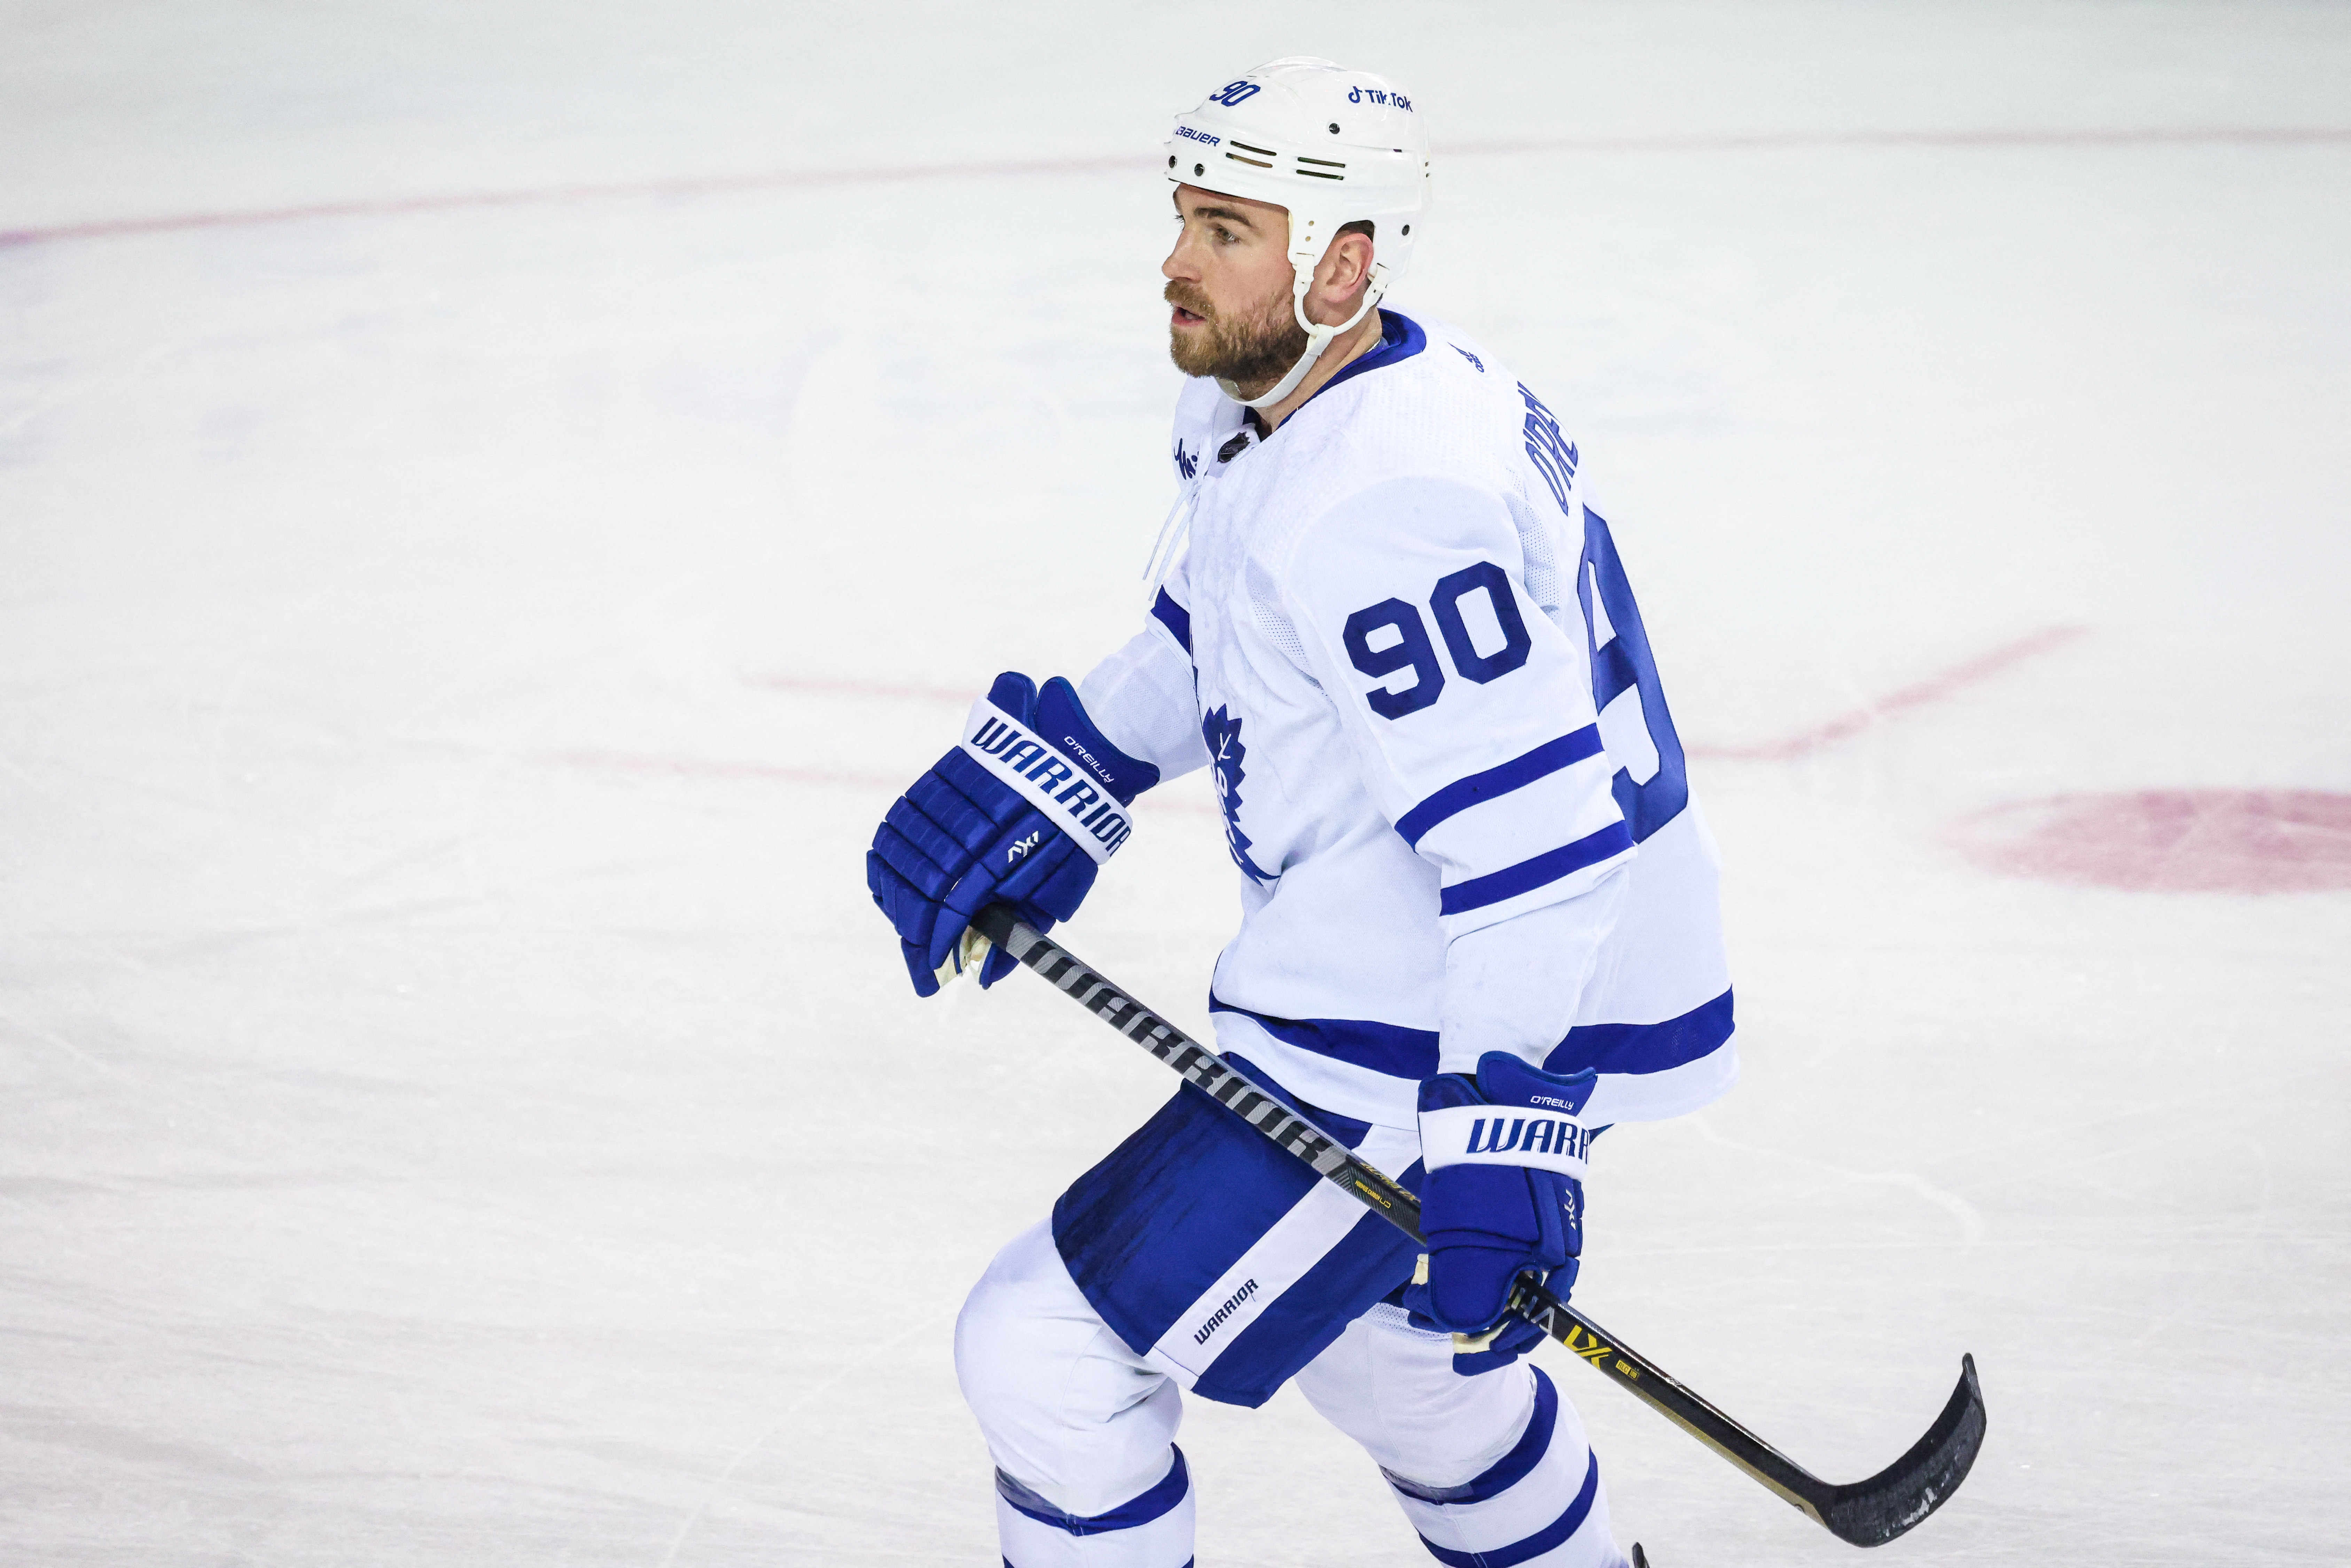 Blues trade captain Ryan O'Reilly, Noel Acciari to Toronto Maple Leafs